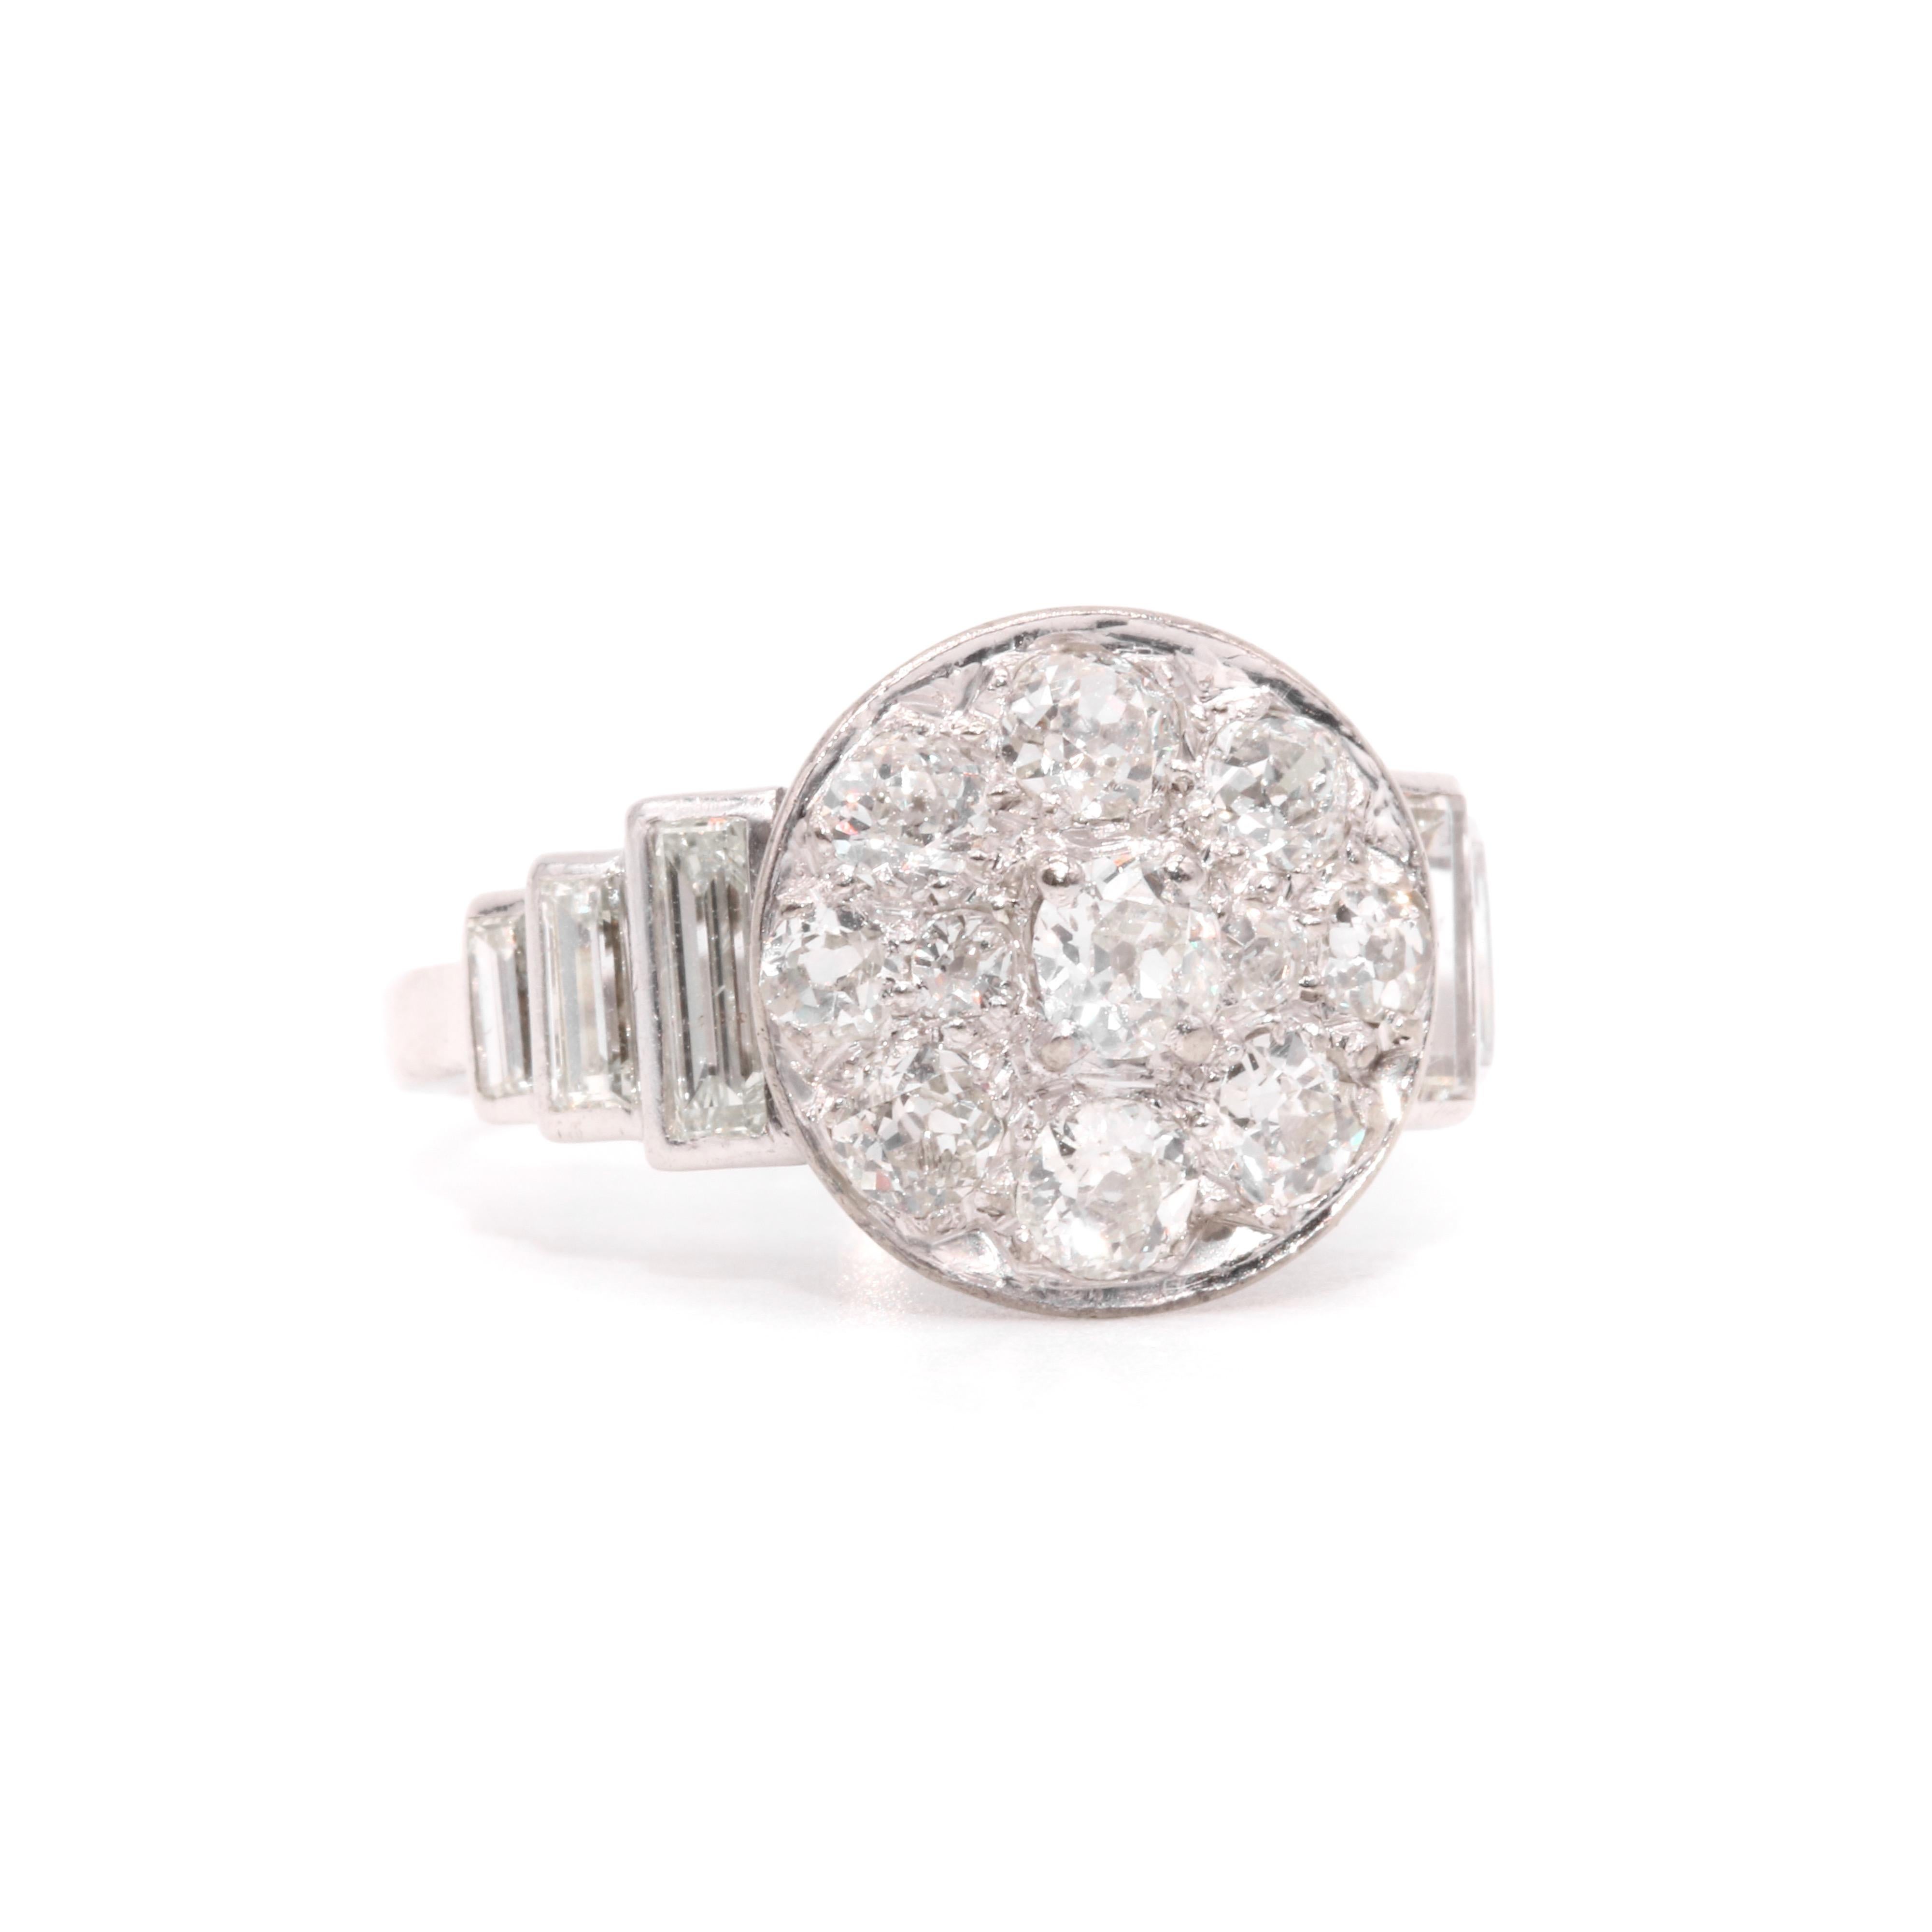 Women's or Men's Art Deco 1930s Platinum 2.44ctw Old Cut Diamond Ring with Baguette Cut Shoulders For Sale